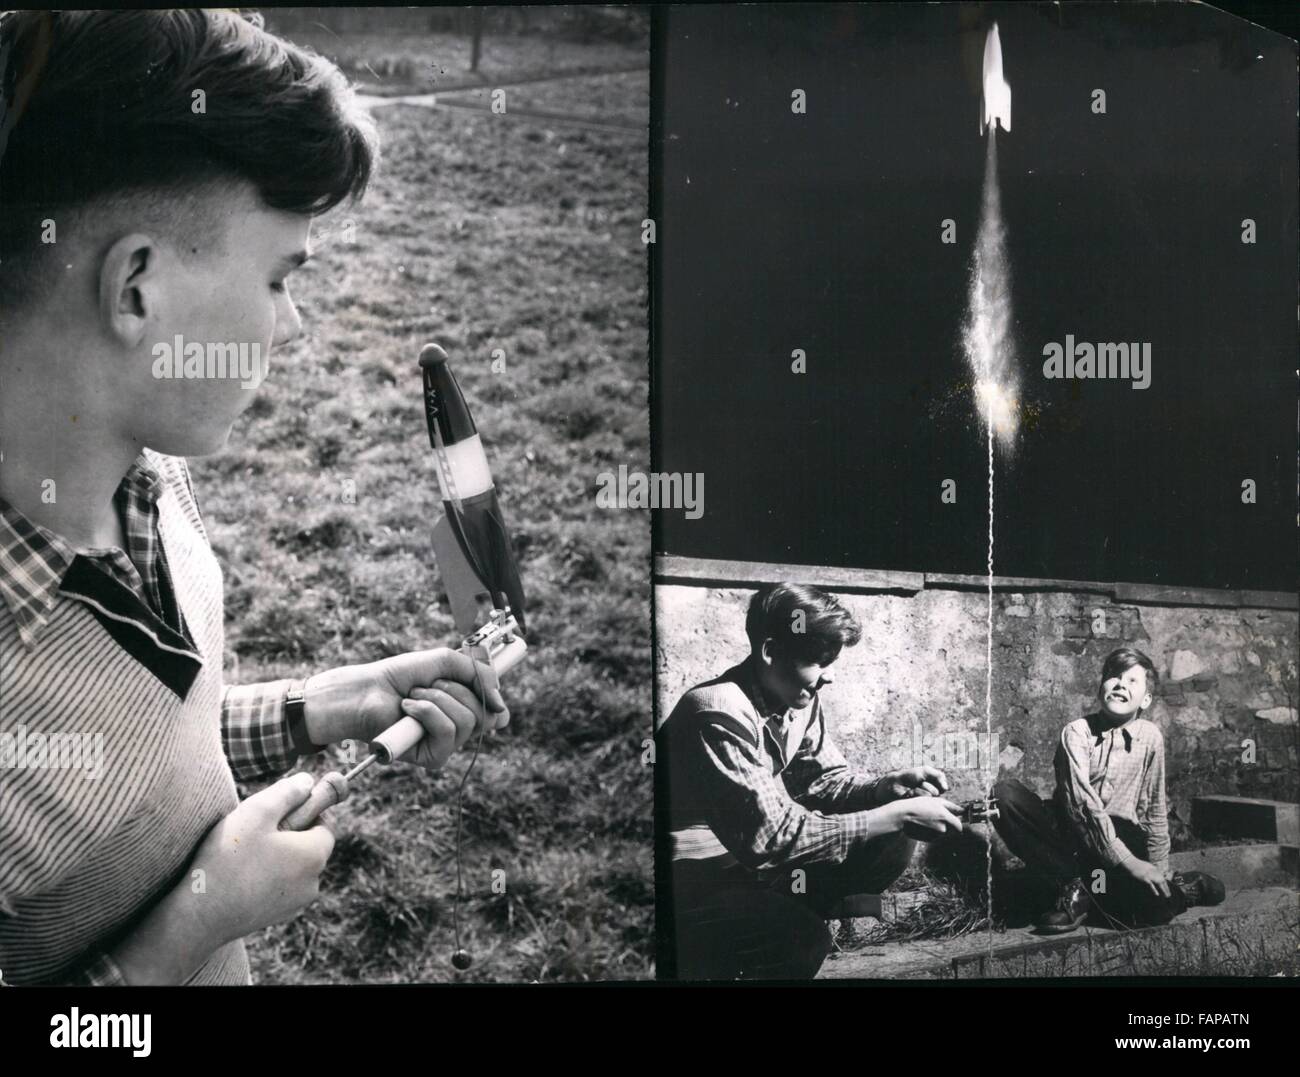 1962 - Jouet unique ''V-X'' à la Fusée Toy Fair Nuremberg : ce jouet unique Rocket est l'un des étoiles articles au salon du jouet de Nuremberg. Il est fabriqué en bois avec du papier plié les côtes, et est exploité par l'air comprimé et l'eau qui fonctionne comme un moteur lorsqu'une pompe à air est utilisé pour compresser l'air dans la fusée. Le ''V-X'' comme on dit est parfaitement sûr qu'il n'y a pas d'explosion lors de l'ensemble de et il a été développé par un étudiant de chimie de Mayence. Photo montre deux vues de la nouvelle ''V-X'' Toy Rocket, la pompe gauche introduit l'air dans la fusée. Il est libéré par la Banque D'Images